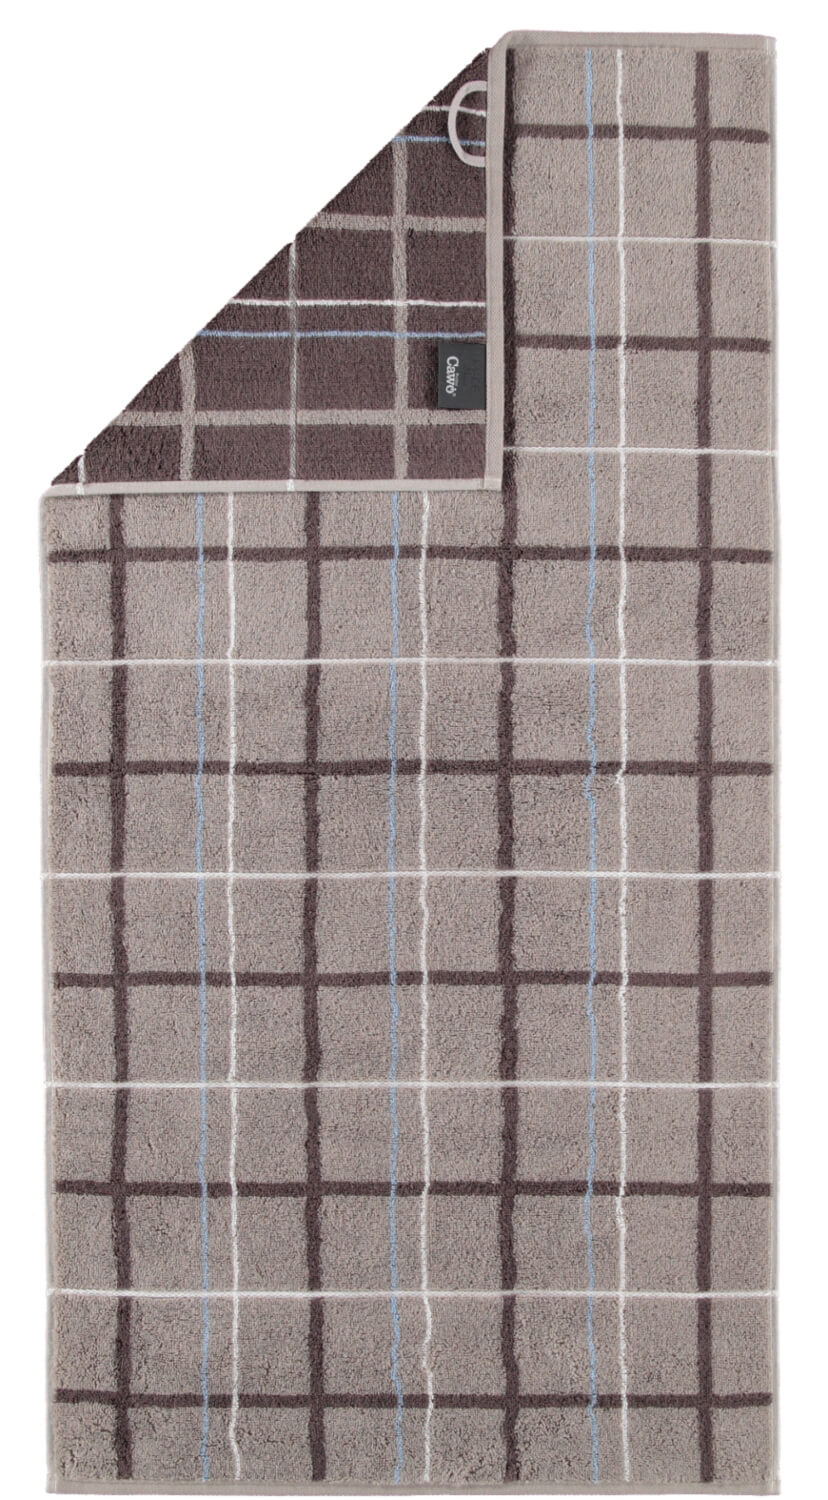 Полотенце премиум класса Avenue Check Graphit (339-73)